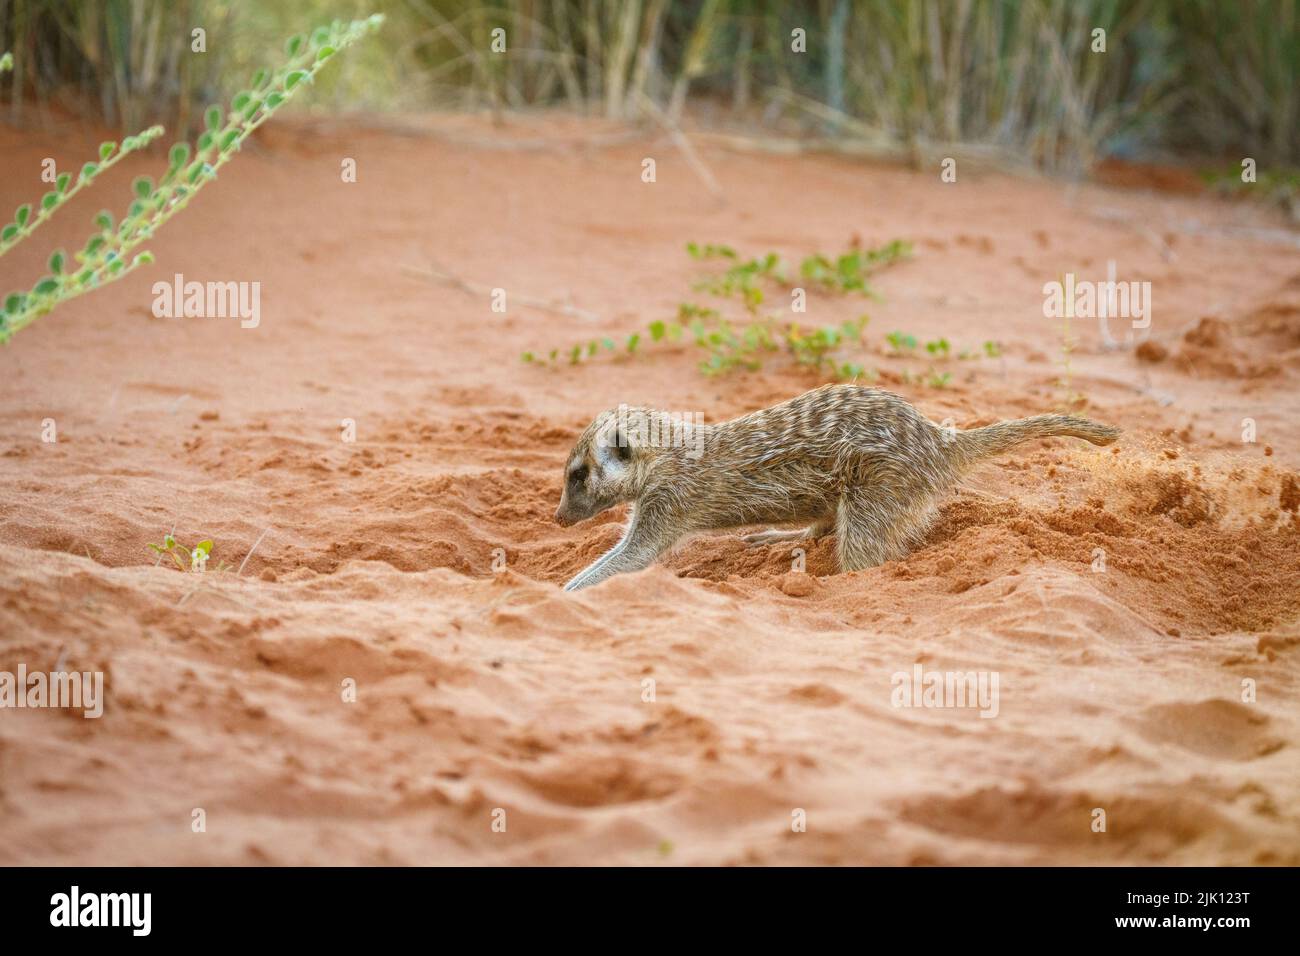 Bébé meerkats (Suricata suricata) creusant une terrow. Kalahari, Parc national transfrontalier, Afrique du Sud Banque D'Images